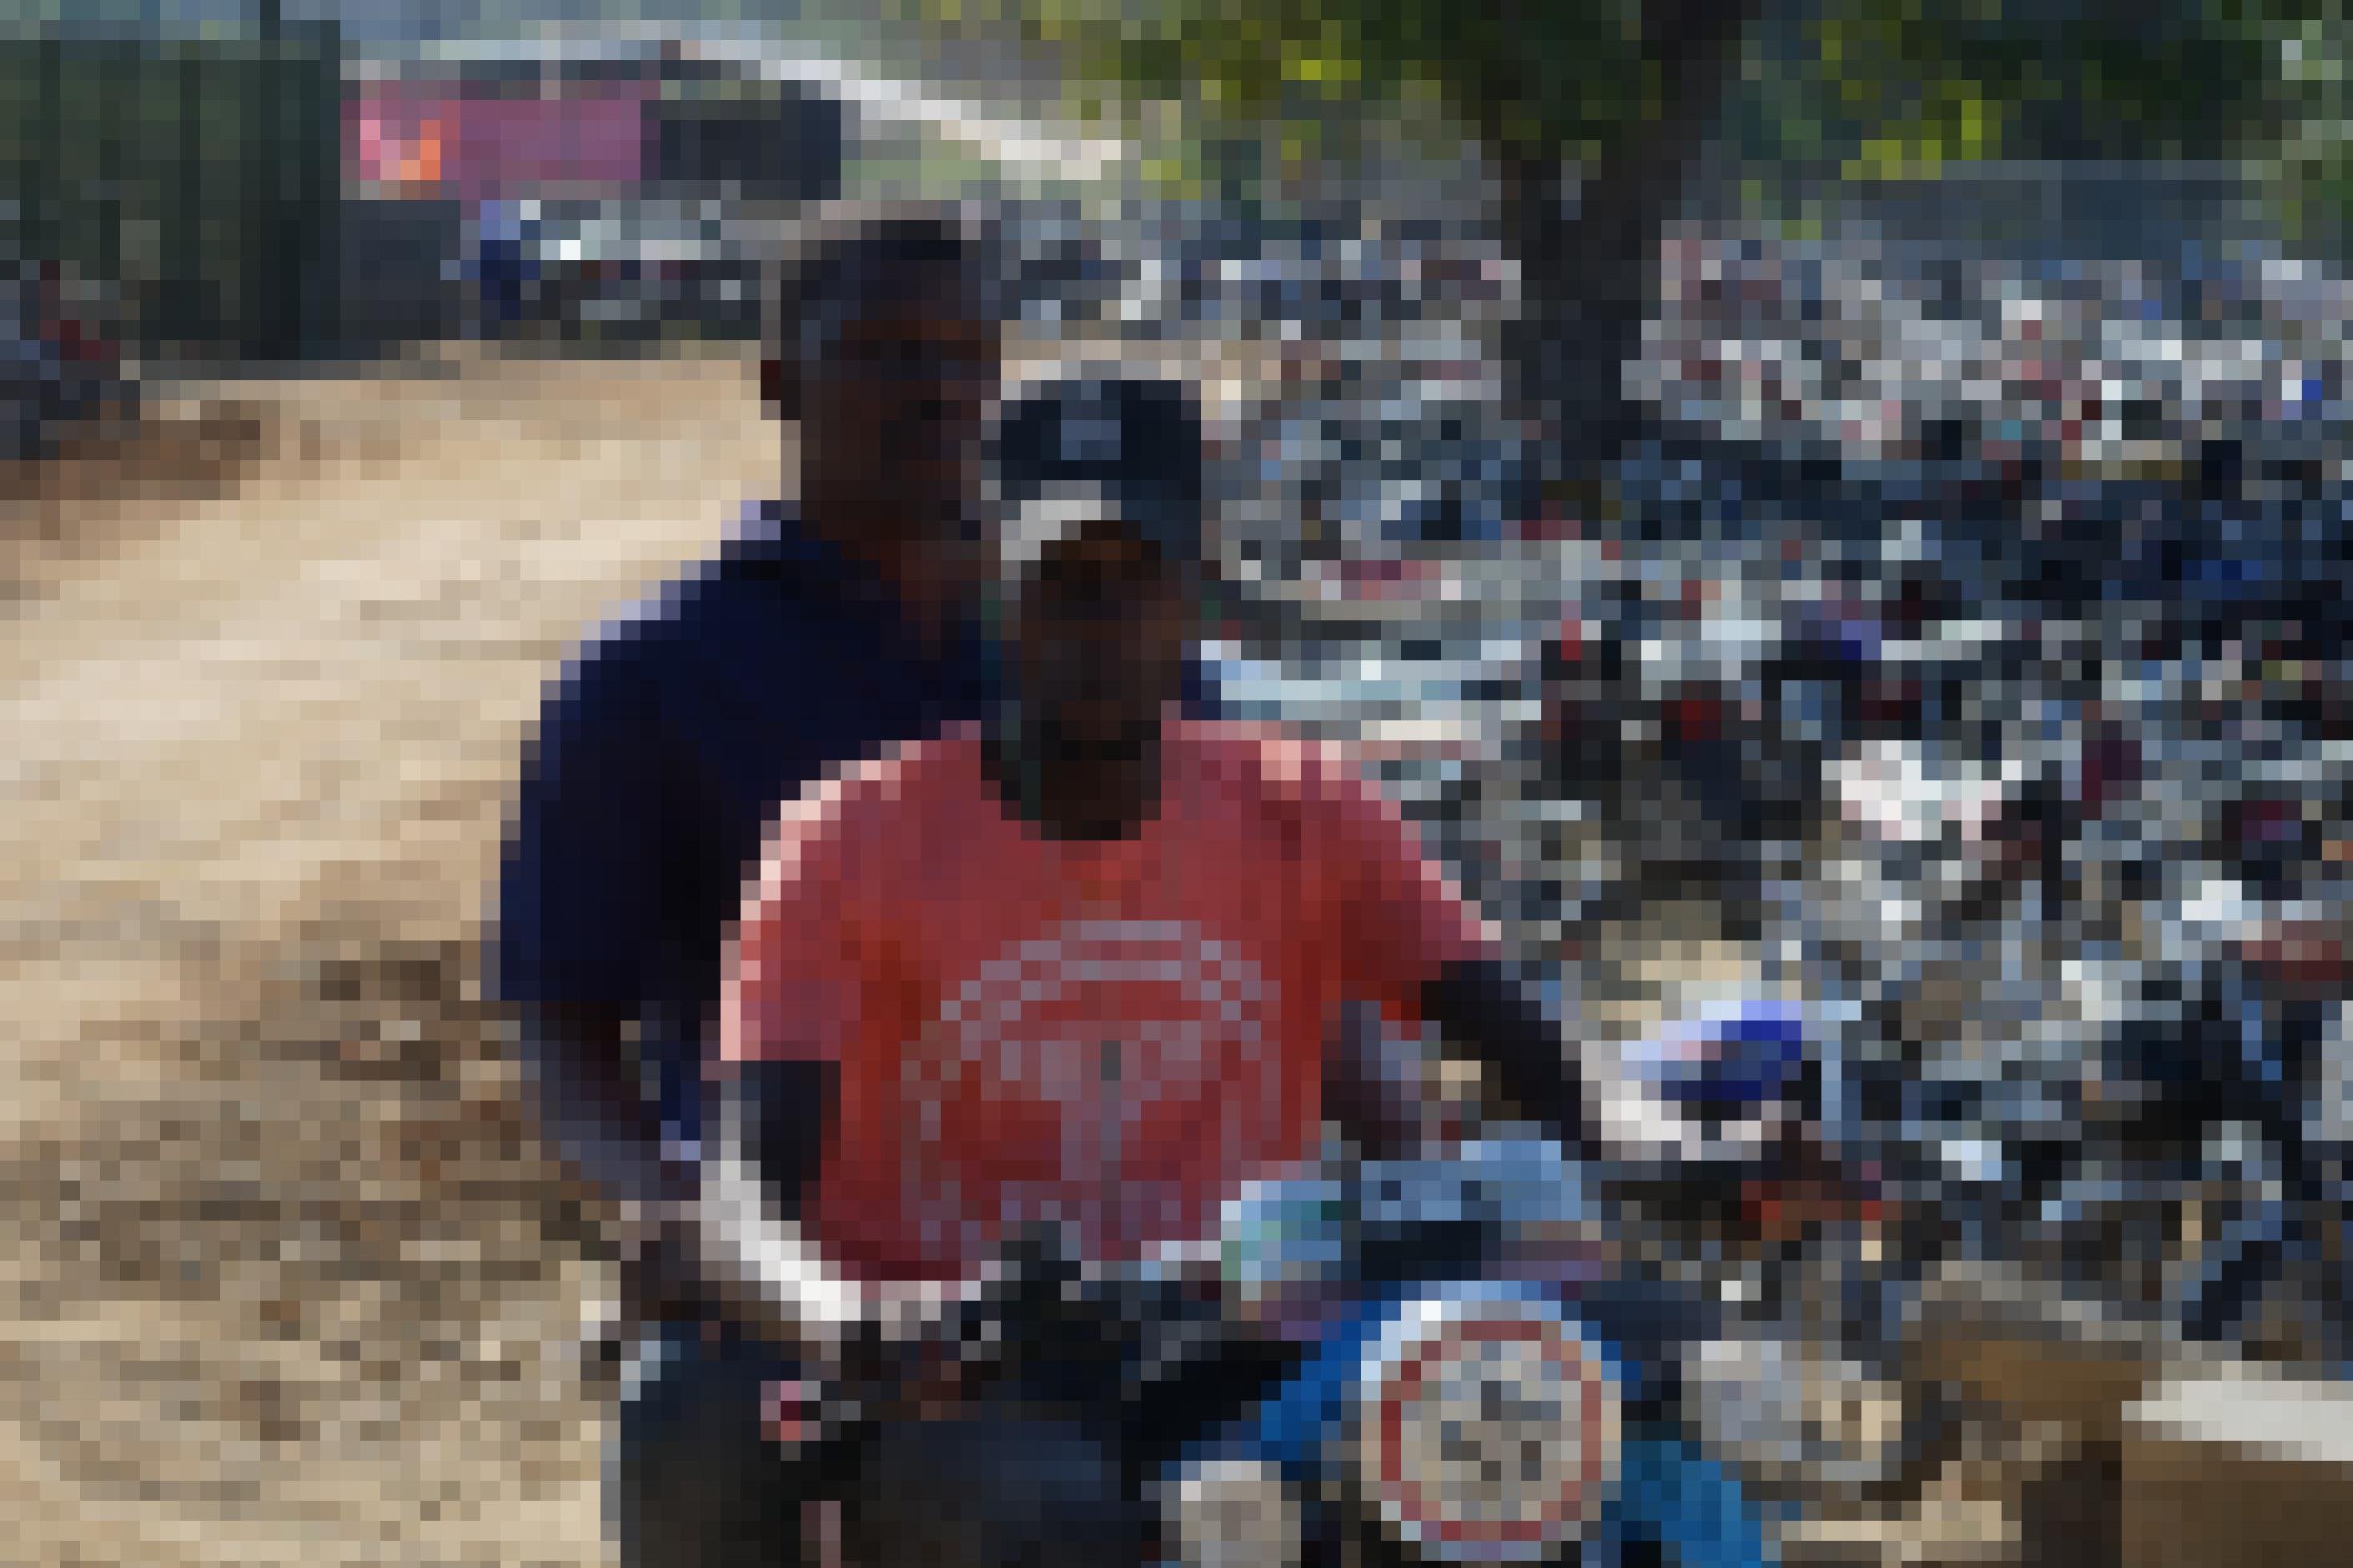 Zwei junge Männer auf einem Motorrad, dahinter hunderte aufgereihter, parkender Mopeds.